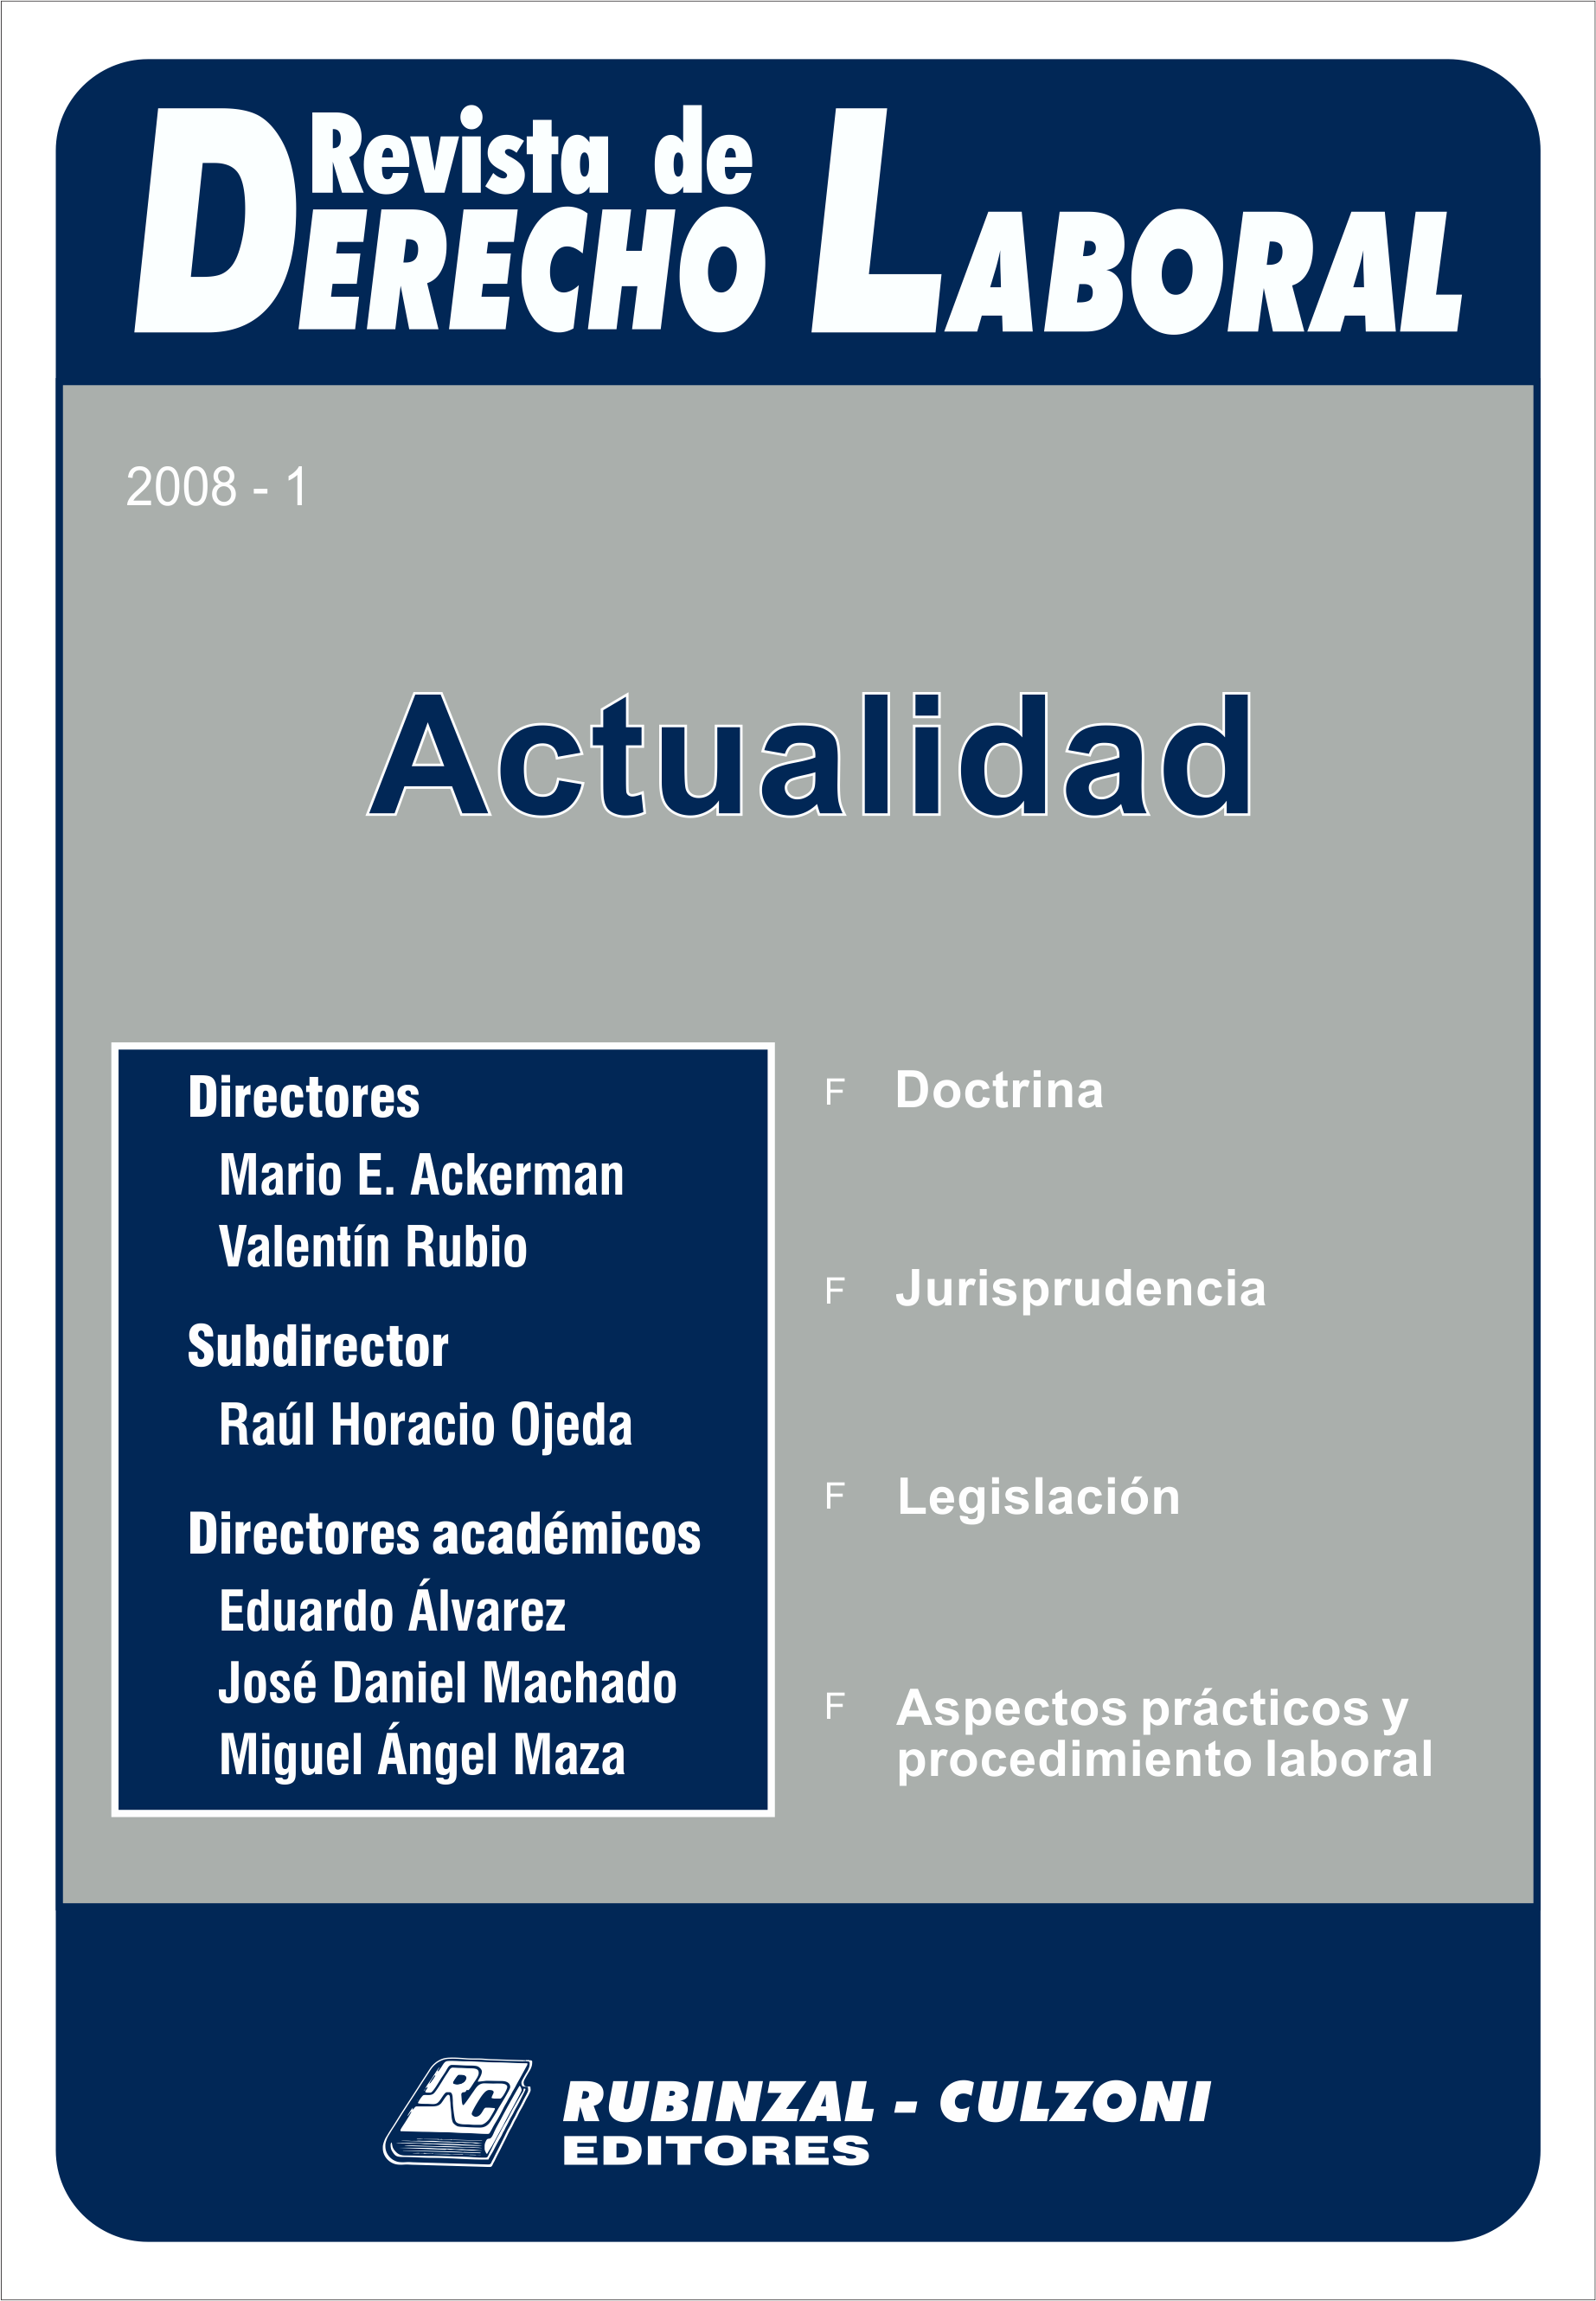  Actualidad - Año 2008 - 1. [2008-1]